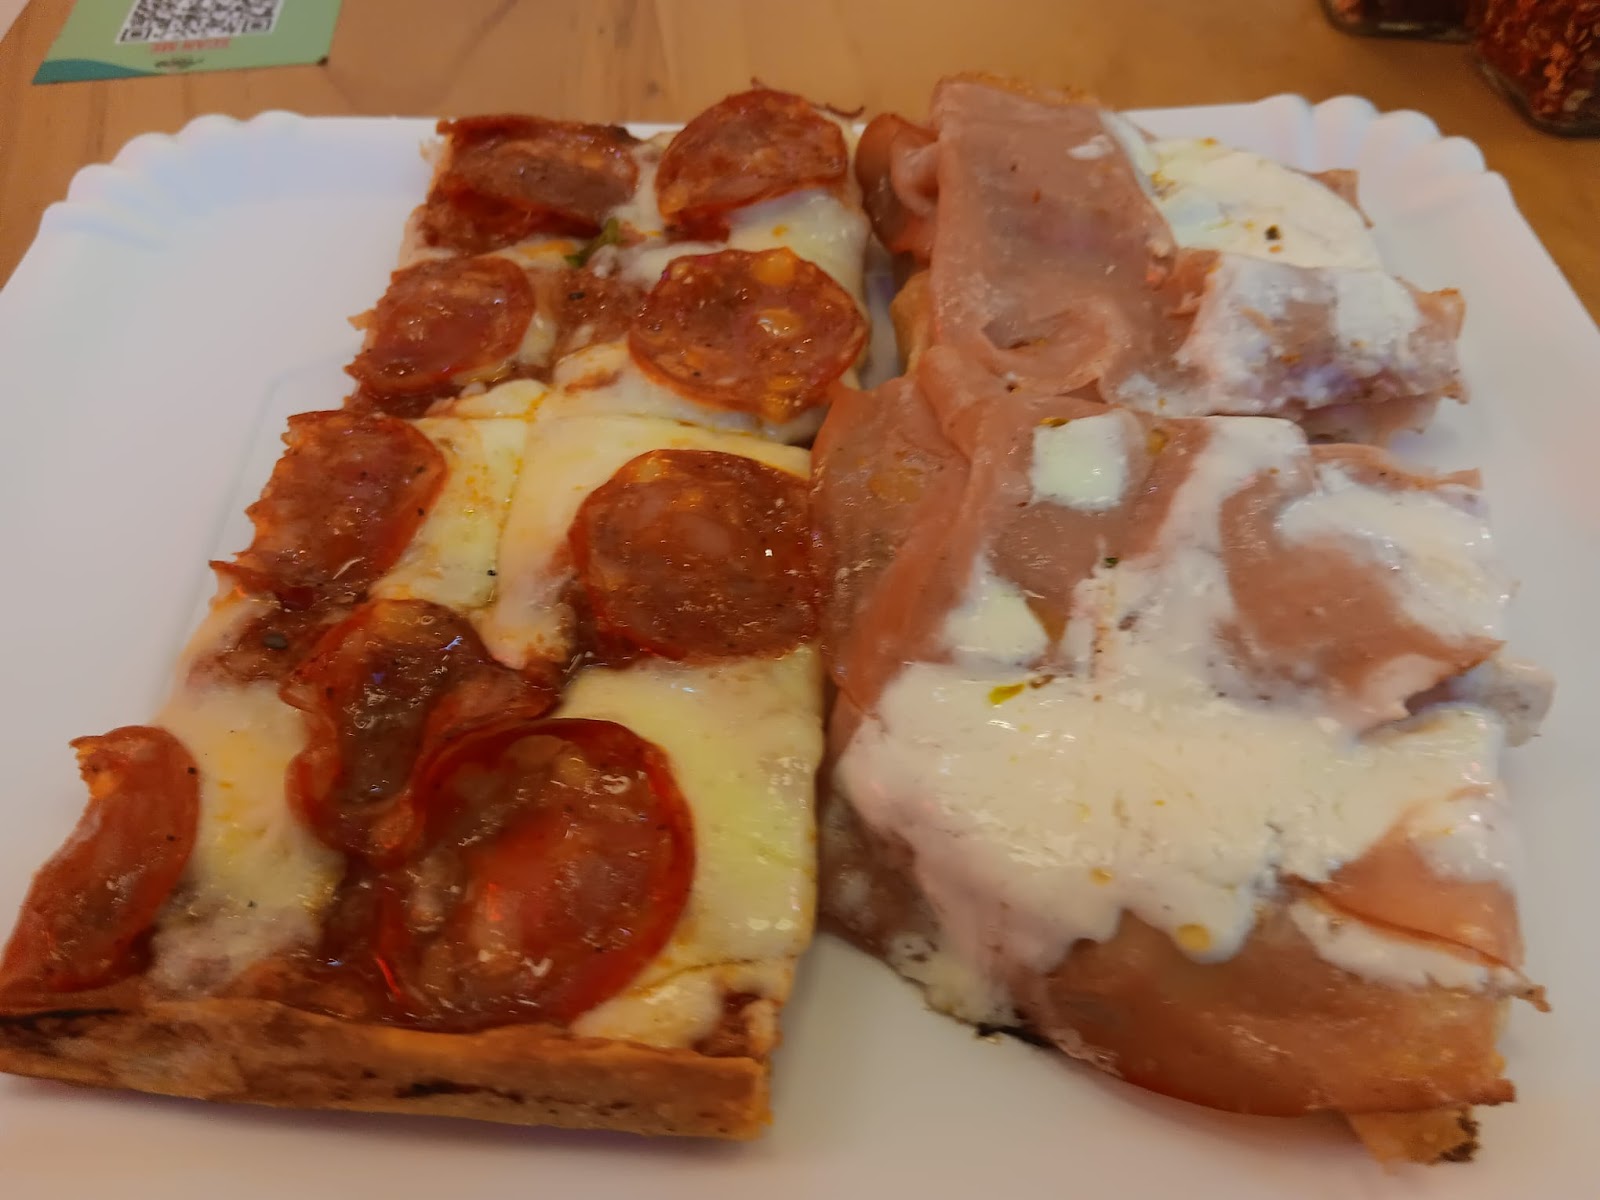 mortadella and pepperoni slices at Alice Pizza